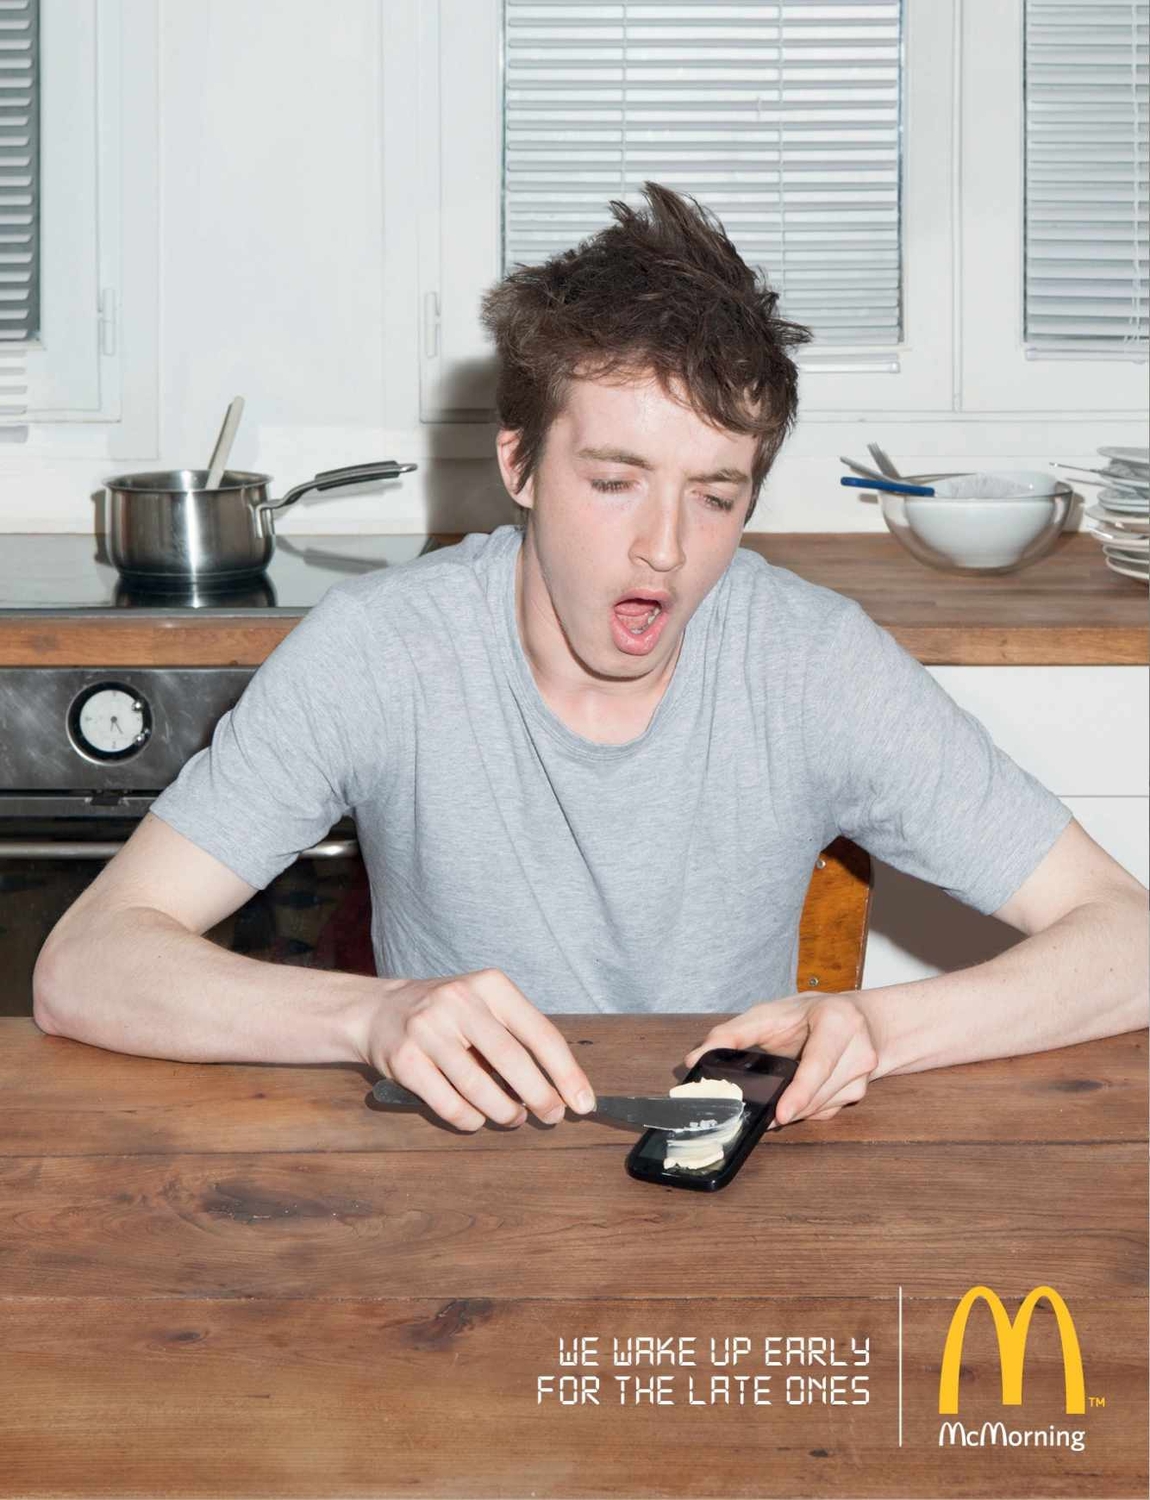 McDonald’s продвигает серию завтраков в серии постов, в которых напоминает потребителям, что сеть фаст-фуда открывается рано.